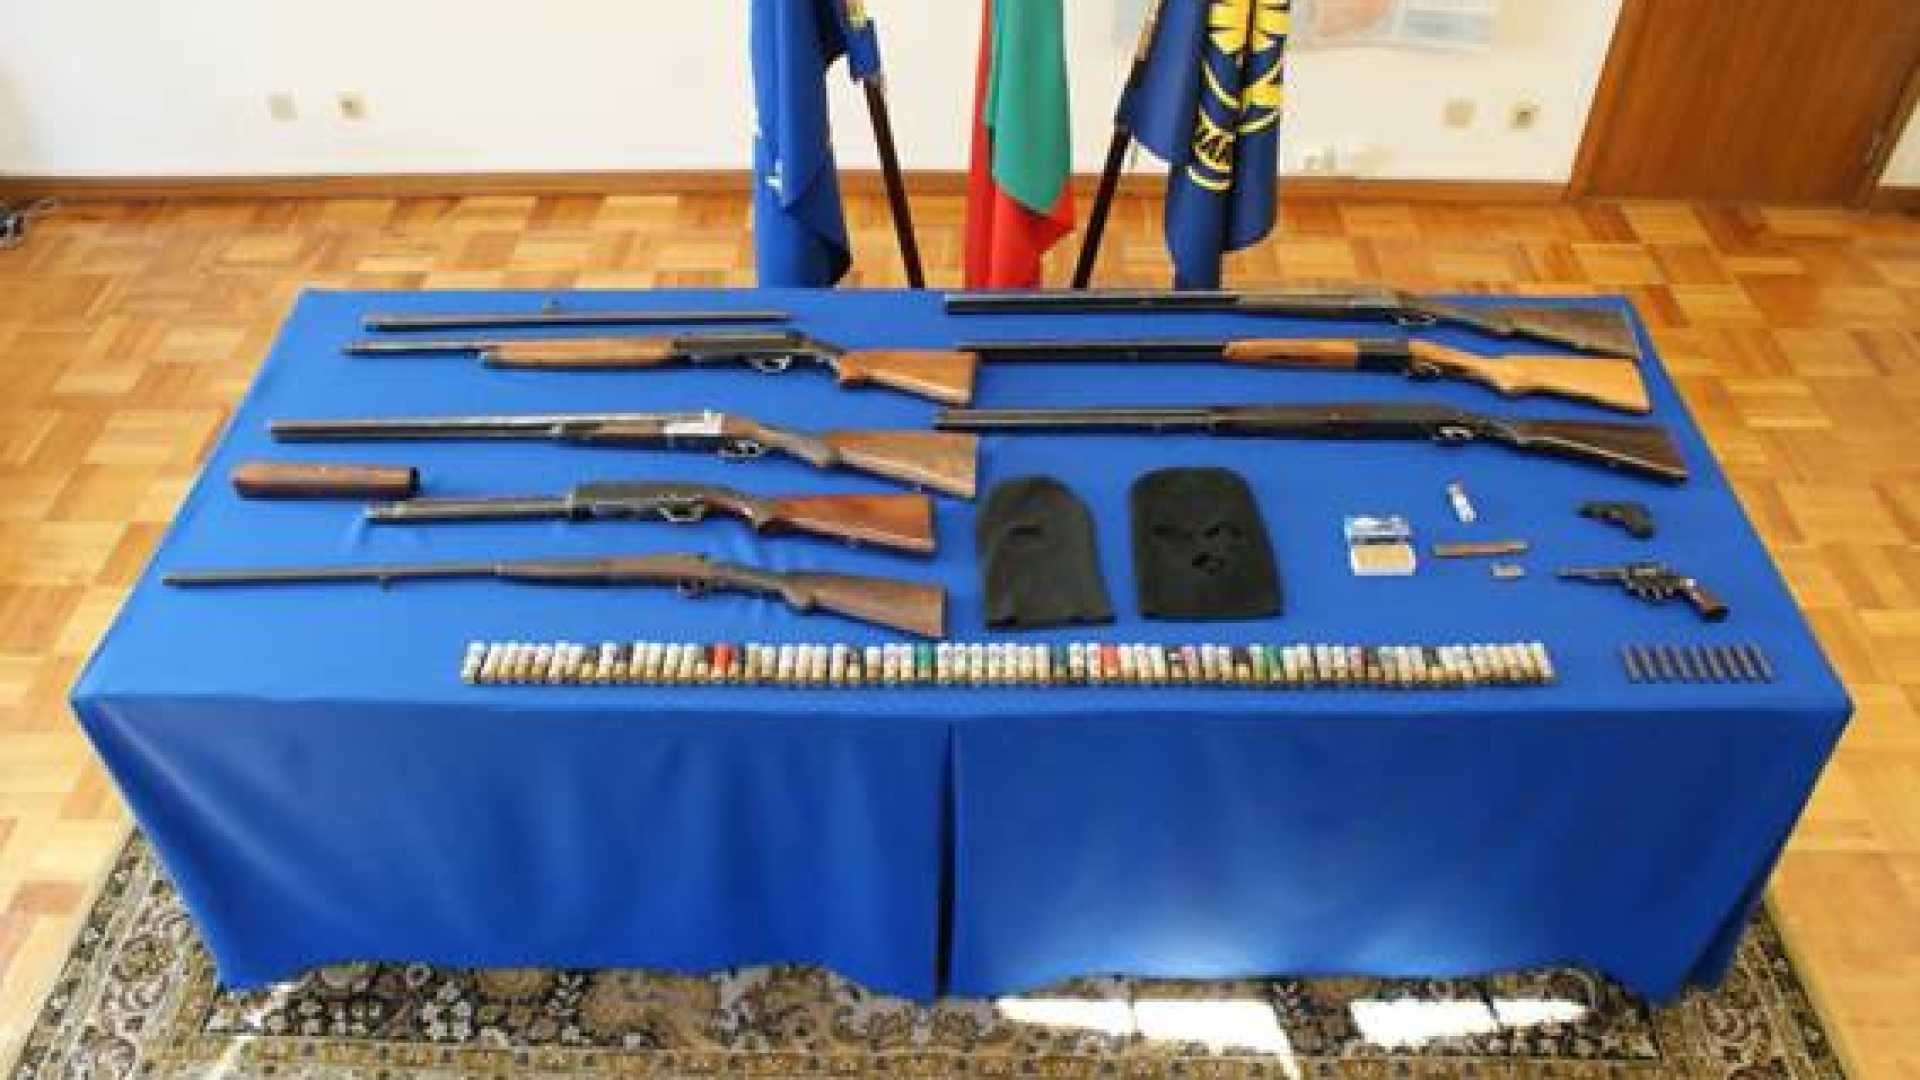 Detidos três suspeitos e apreendidas nove armas de fogo